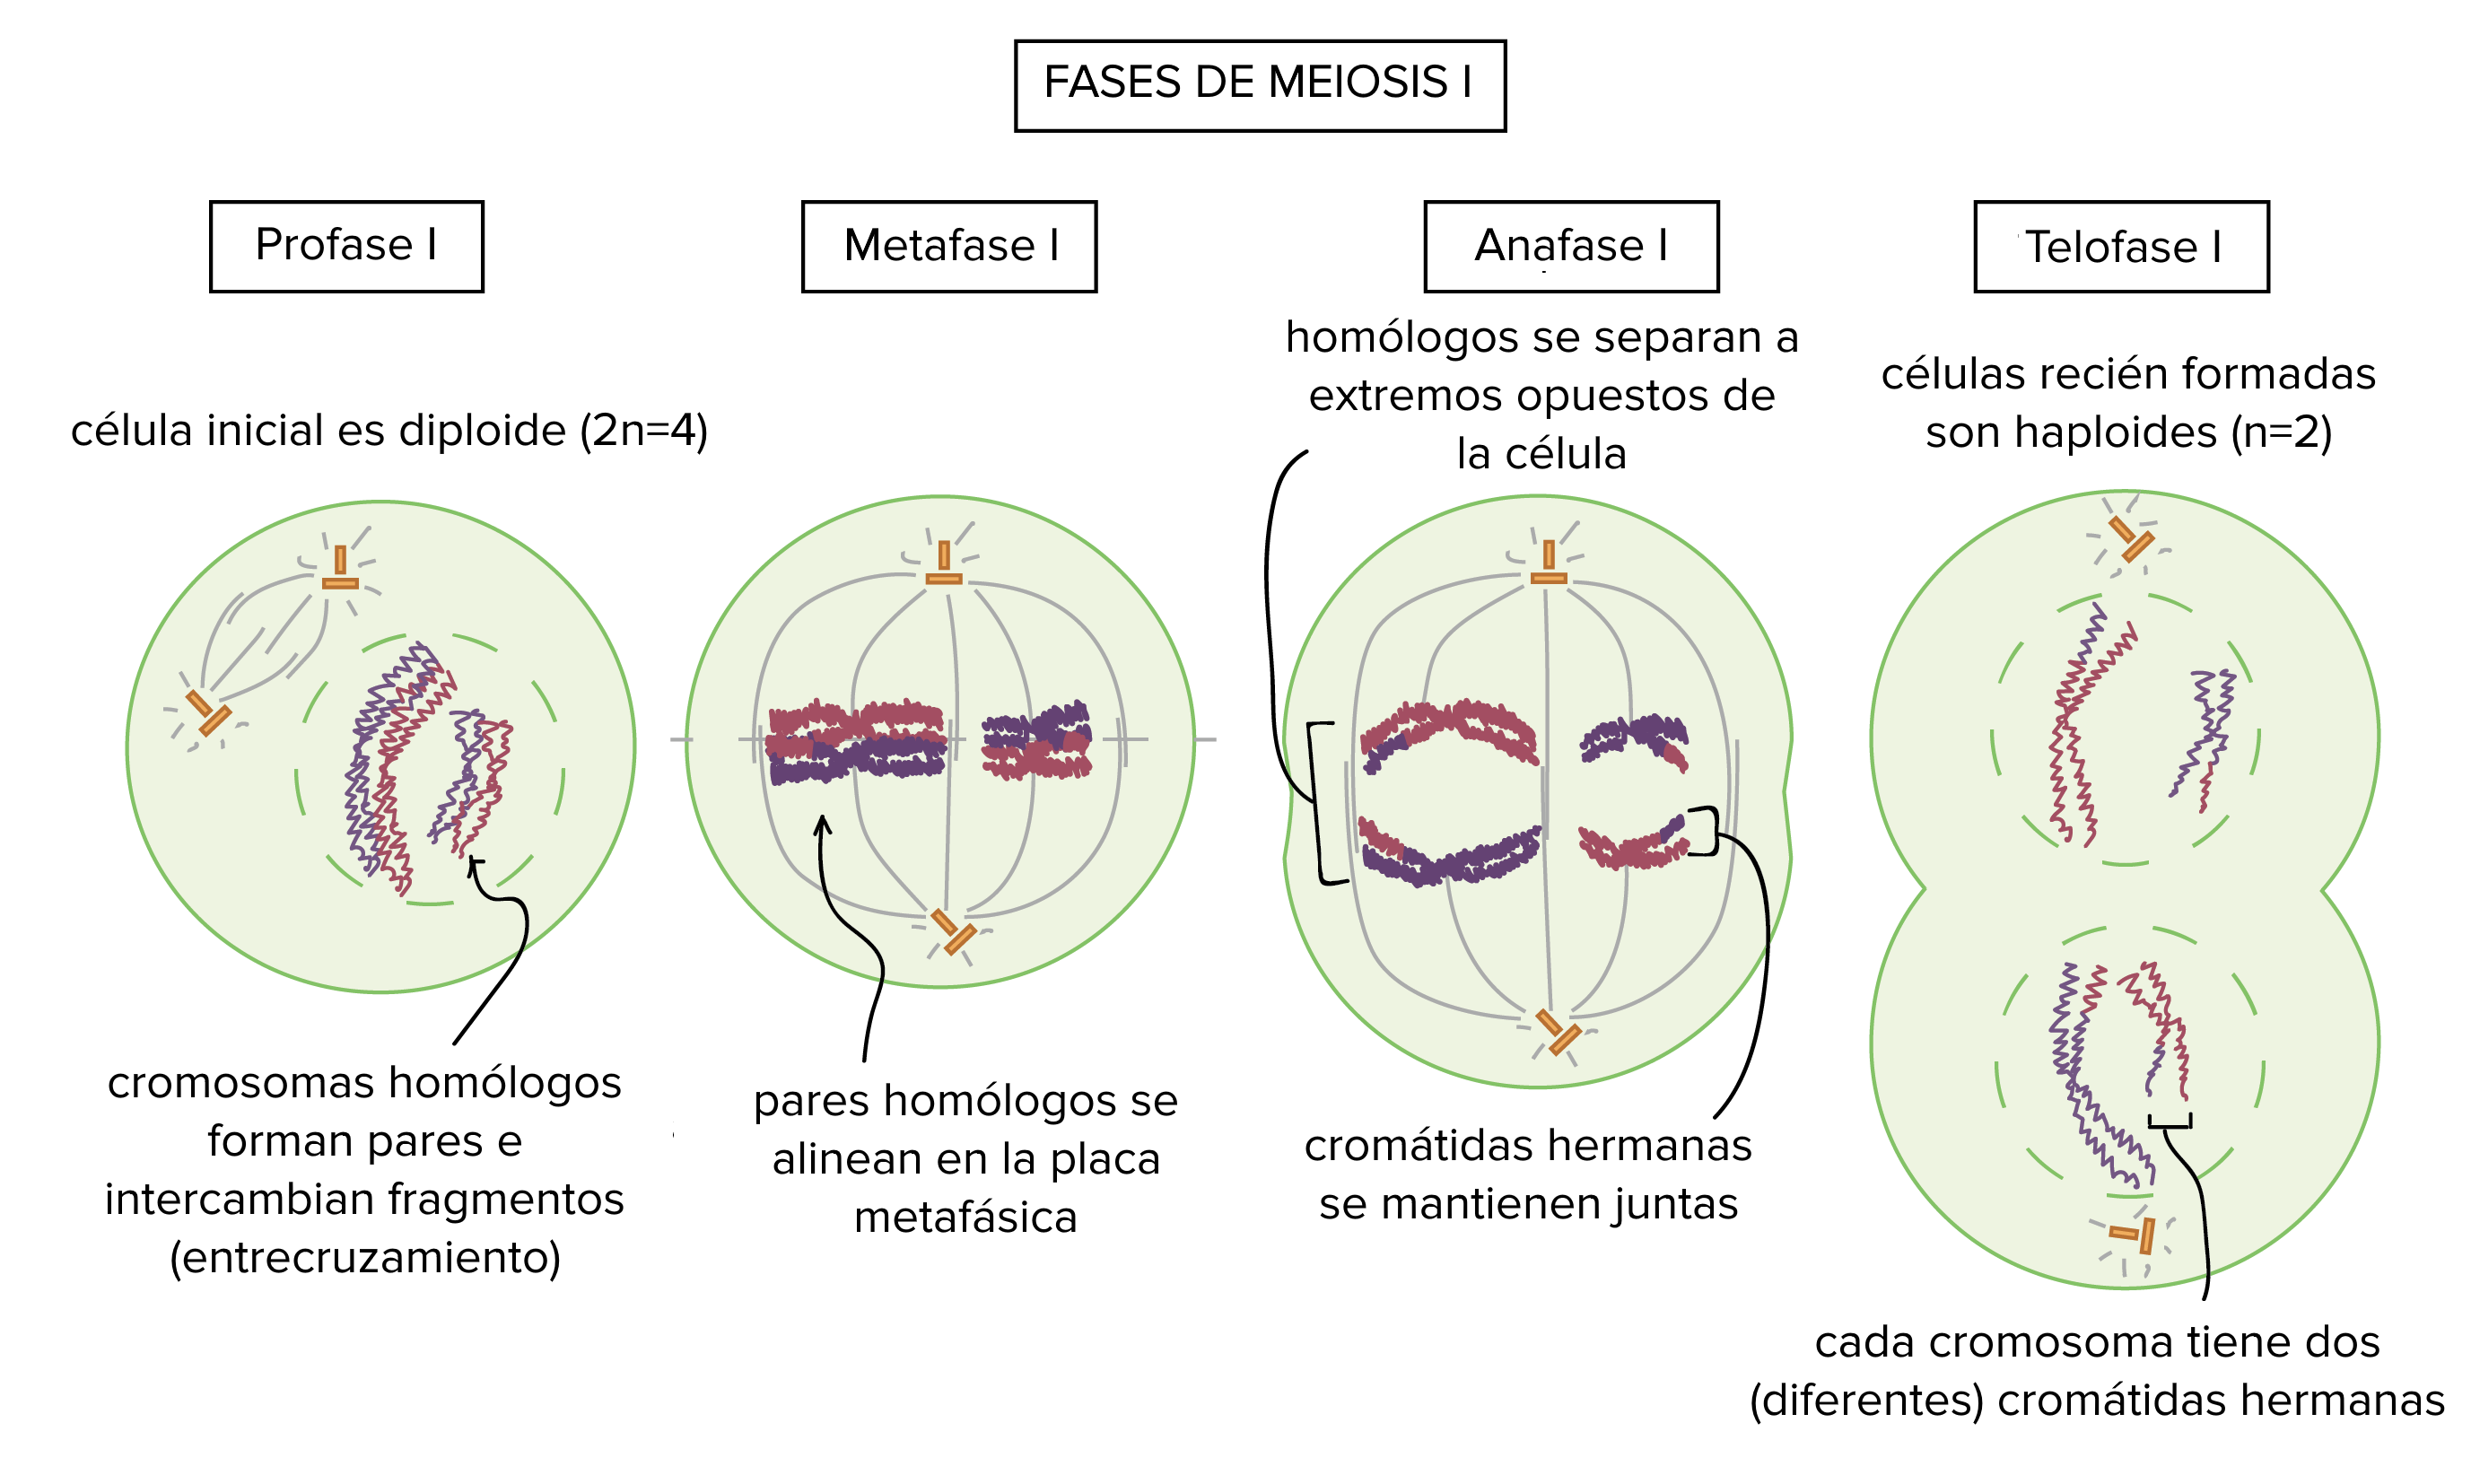 Las fases de la meiosis I

Profase I: la célula inicial es diploide 2n = 4. Los cromosomas homólogos se emparejan e intercambian fragmentos en el proceso de entrecruzamiento.

Metafase I: los pares homólogos se alinean en la placa metafásica.

Anafase I: los homólogos se separan a extremos opuestos de la célula. Las cromátidas hermanas permanecen juntas.

Telofase I: las células recién formadas son haploides, n = 2. Cada cromosoma tiene todavía dos cromátidas hermanas, pero las cromátidas de cada cromosoma ya no son idénticas entre sí.